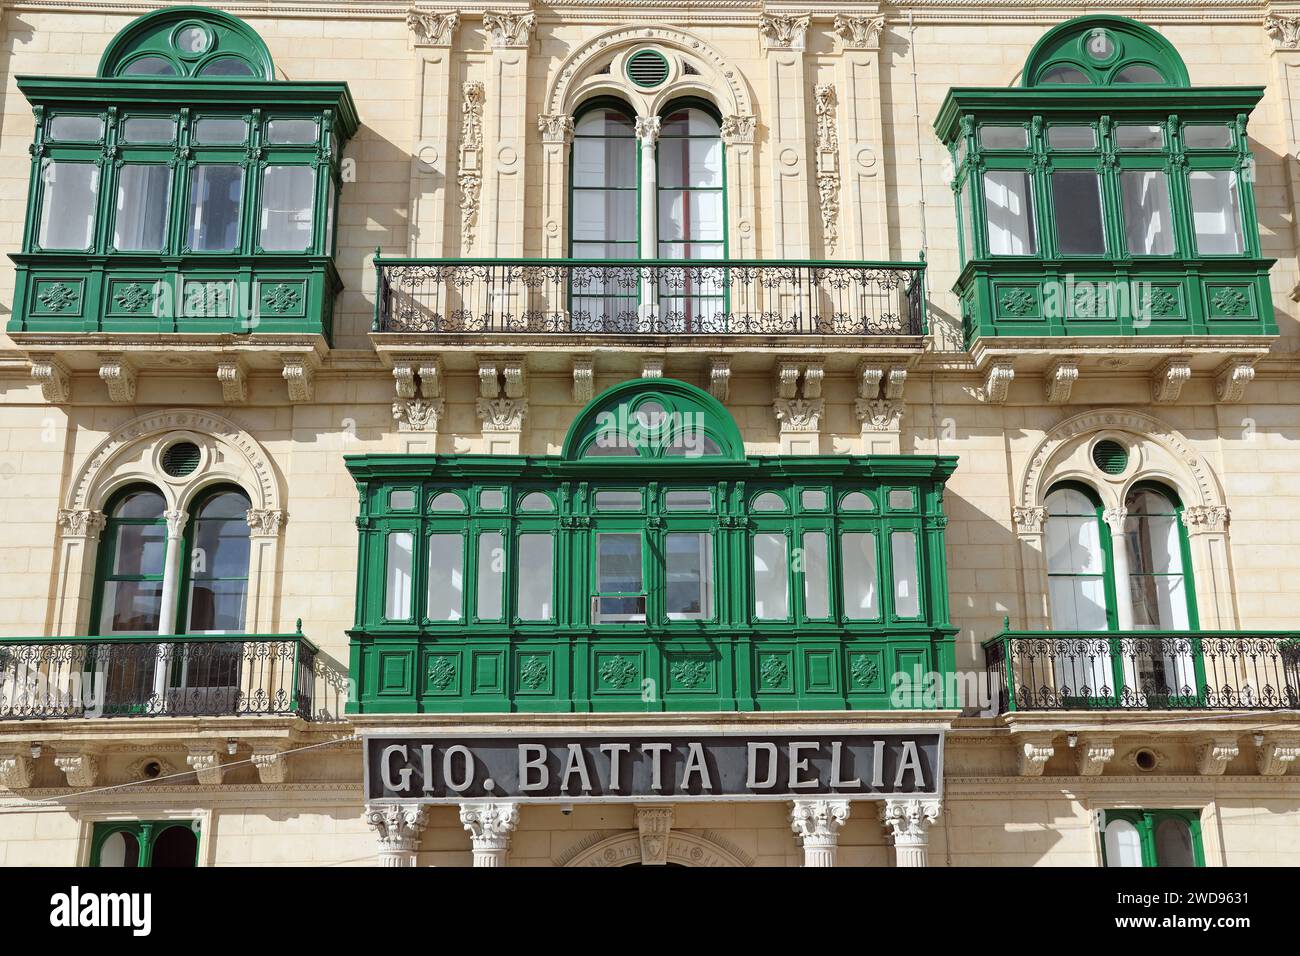 Gio Battista Delia sign on the Palazzo Ferreria in Valletta Stock Photo